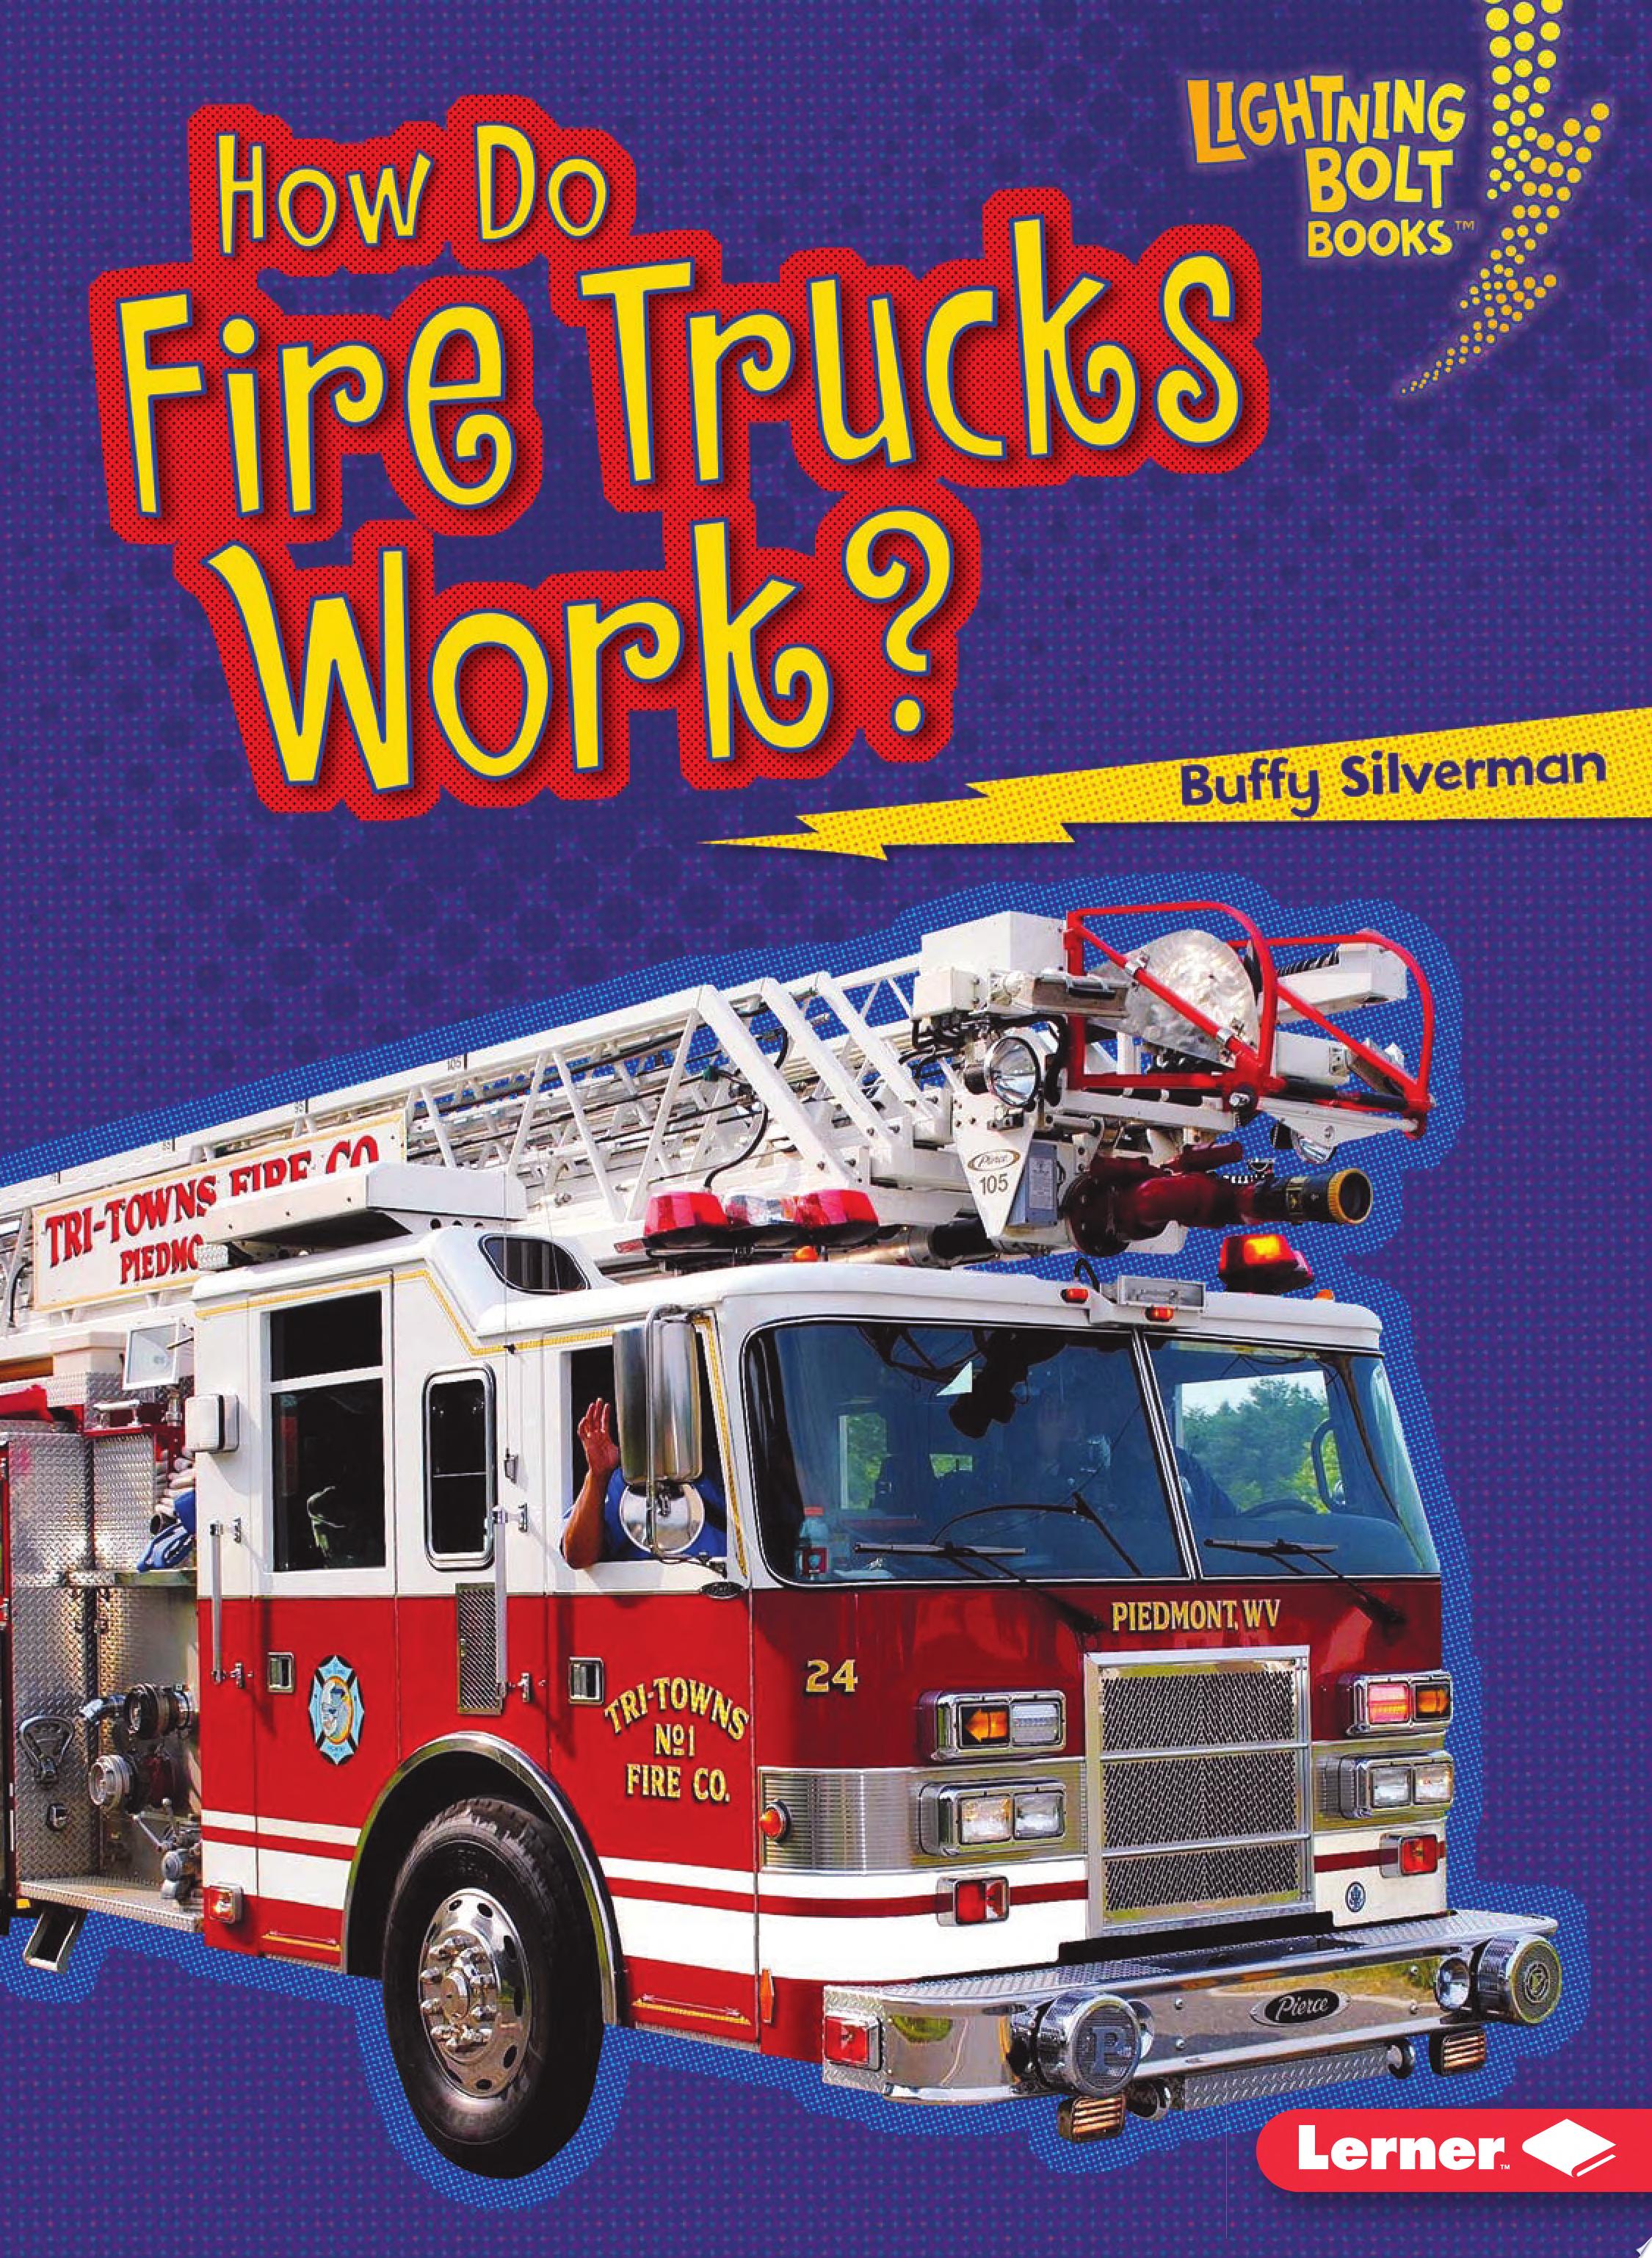 Image for "How Do Fire Trucks Work?"